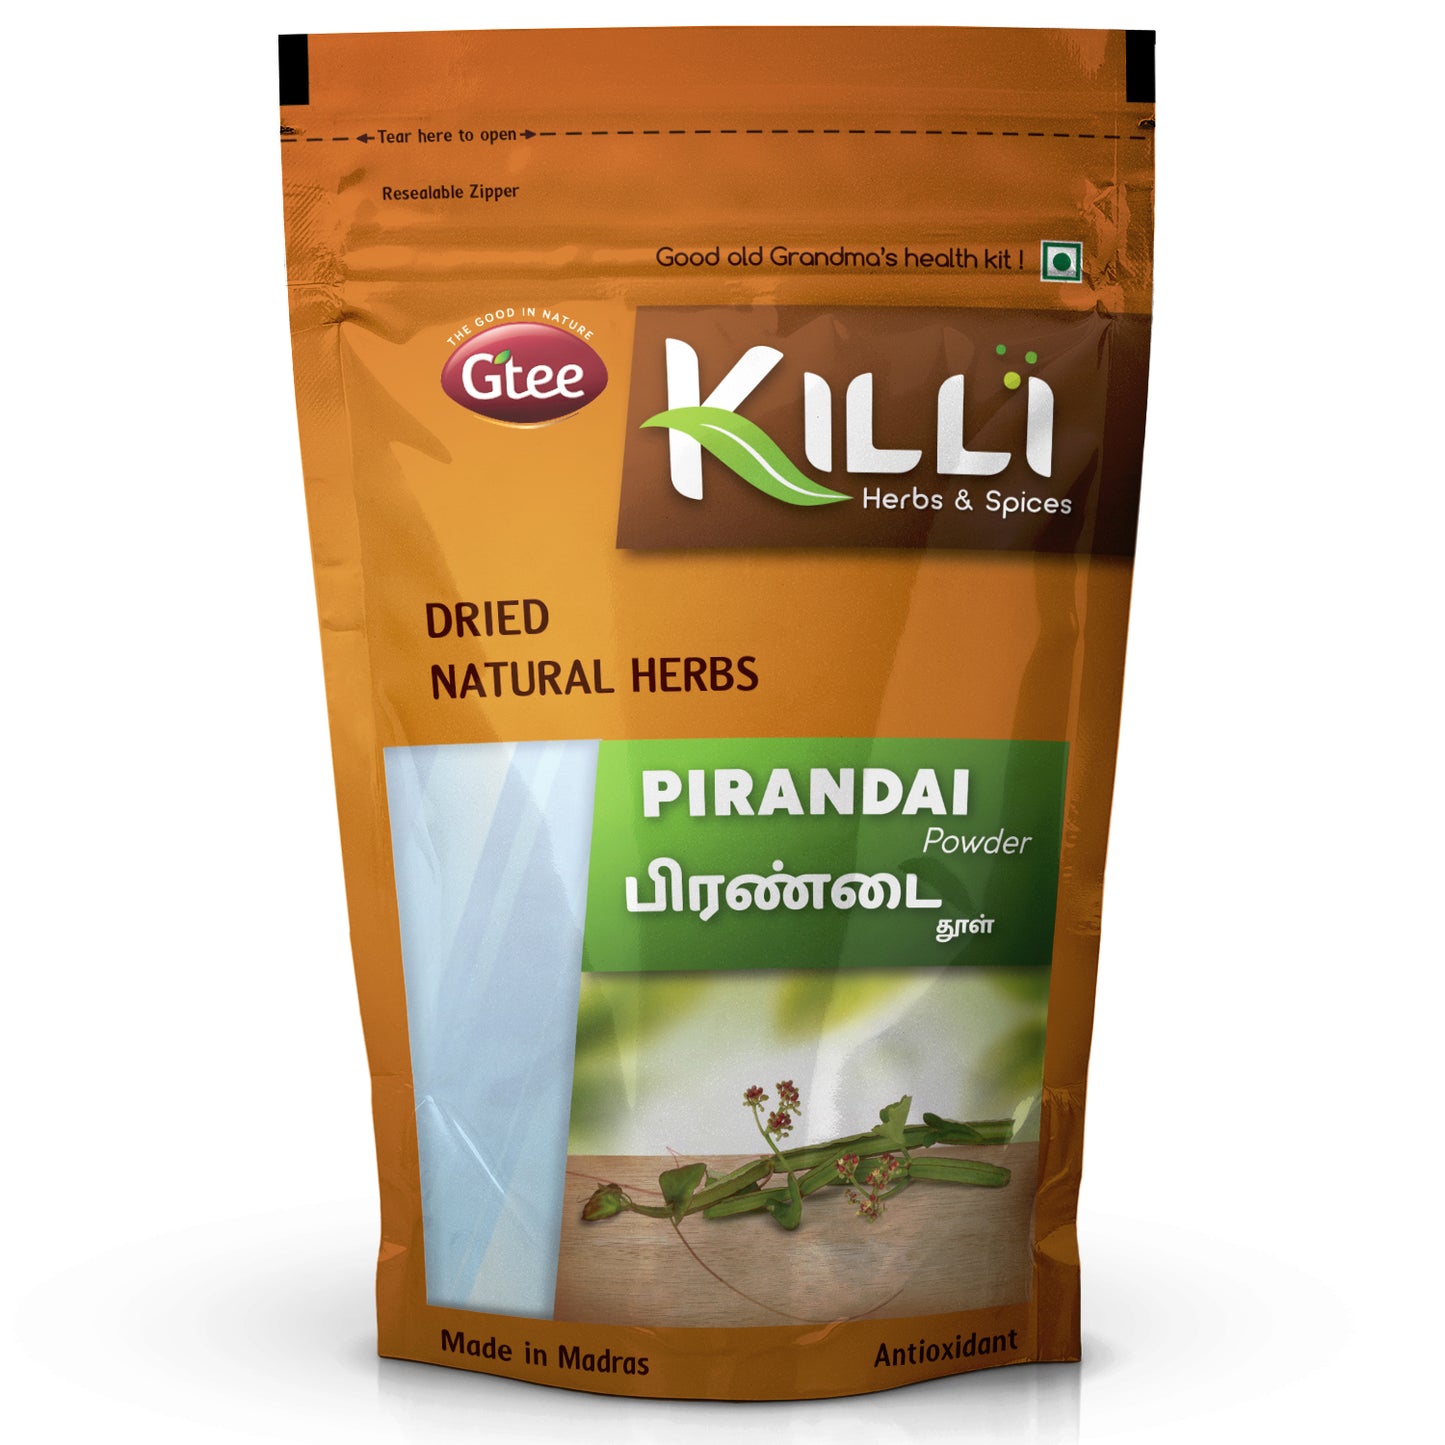 KILLI Pirandai | Hadjod | Veld Grape | Cissus quadrangularis | Nalleru Powder, 100g-SHN1066